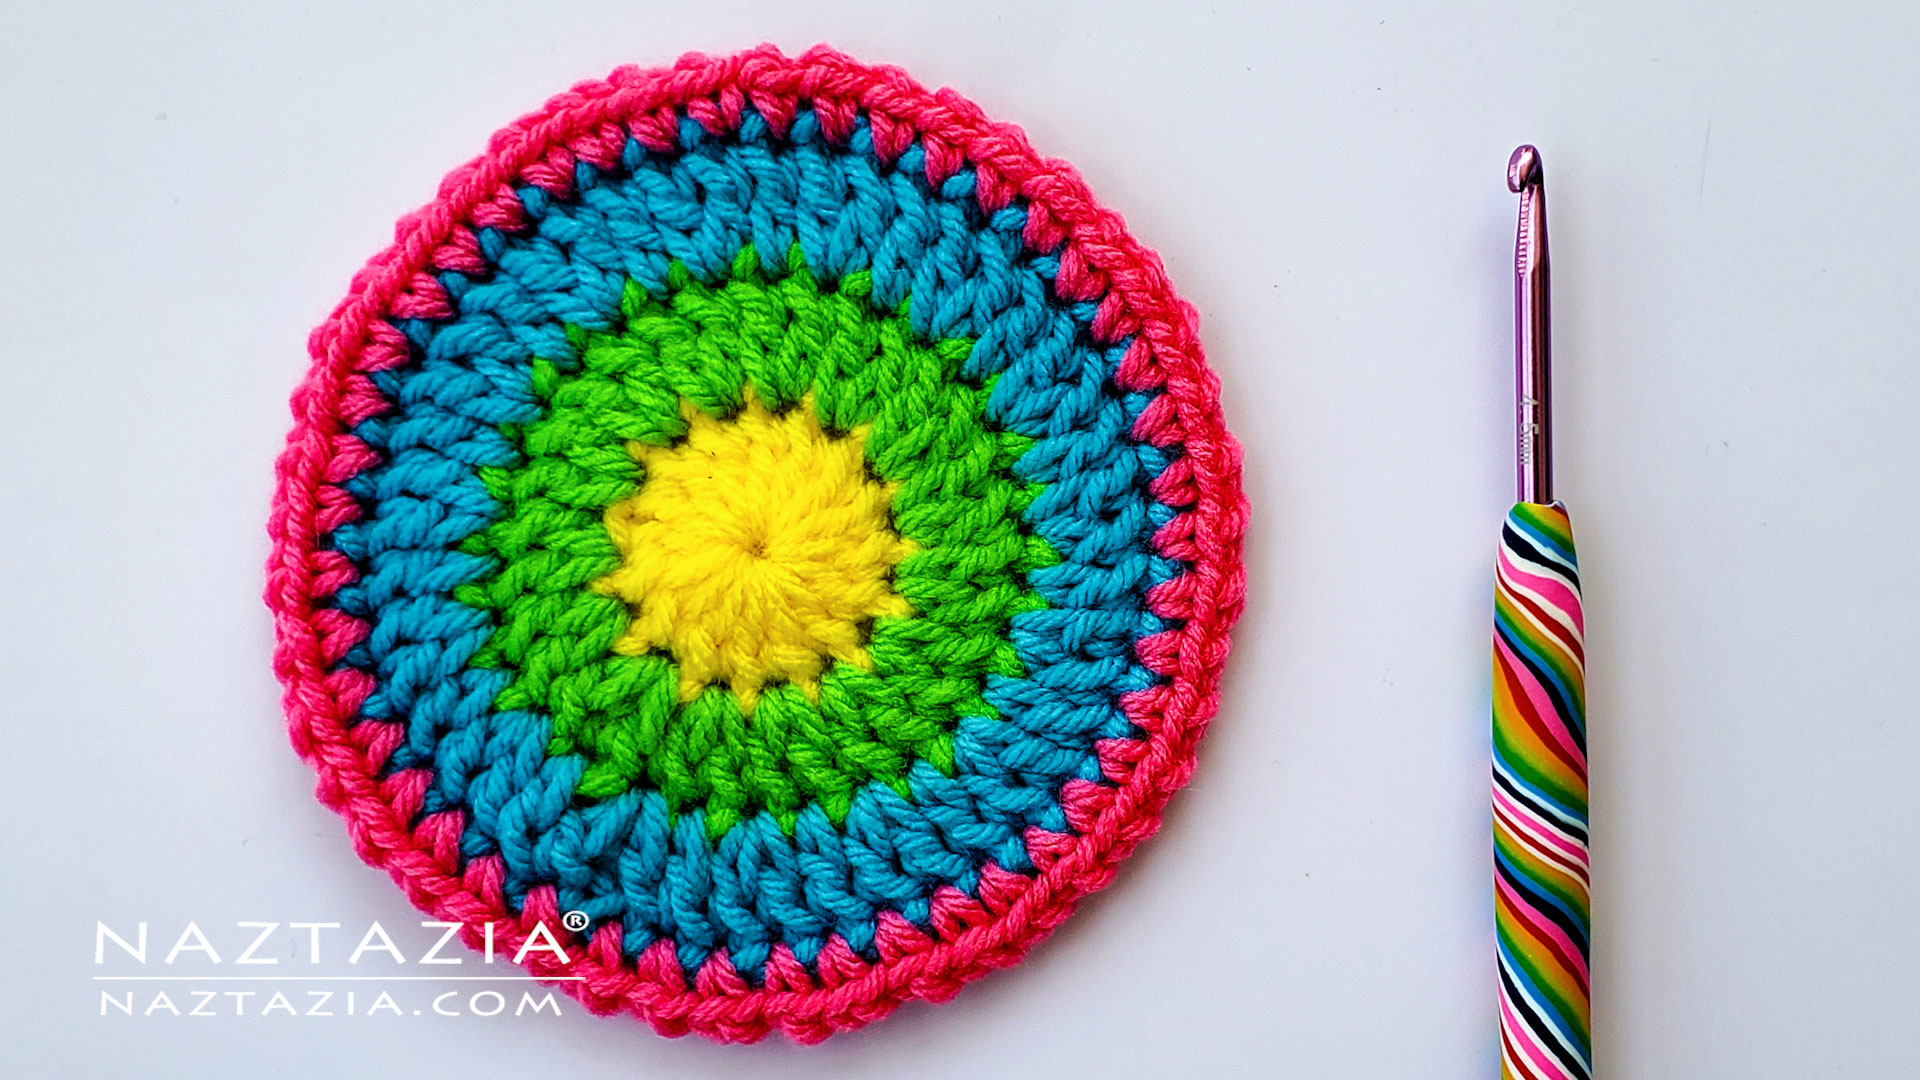 Crochet Chart - Rounds  Crochet circle pattern, Crochet circles